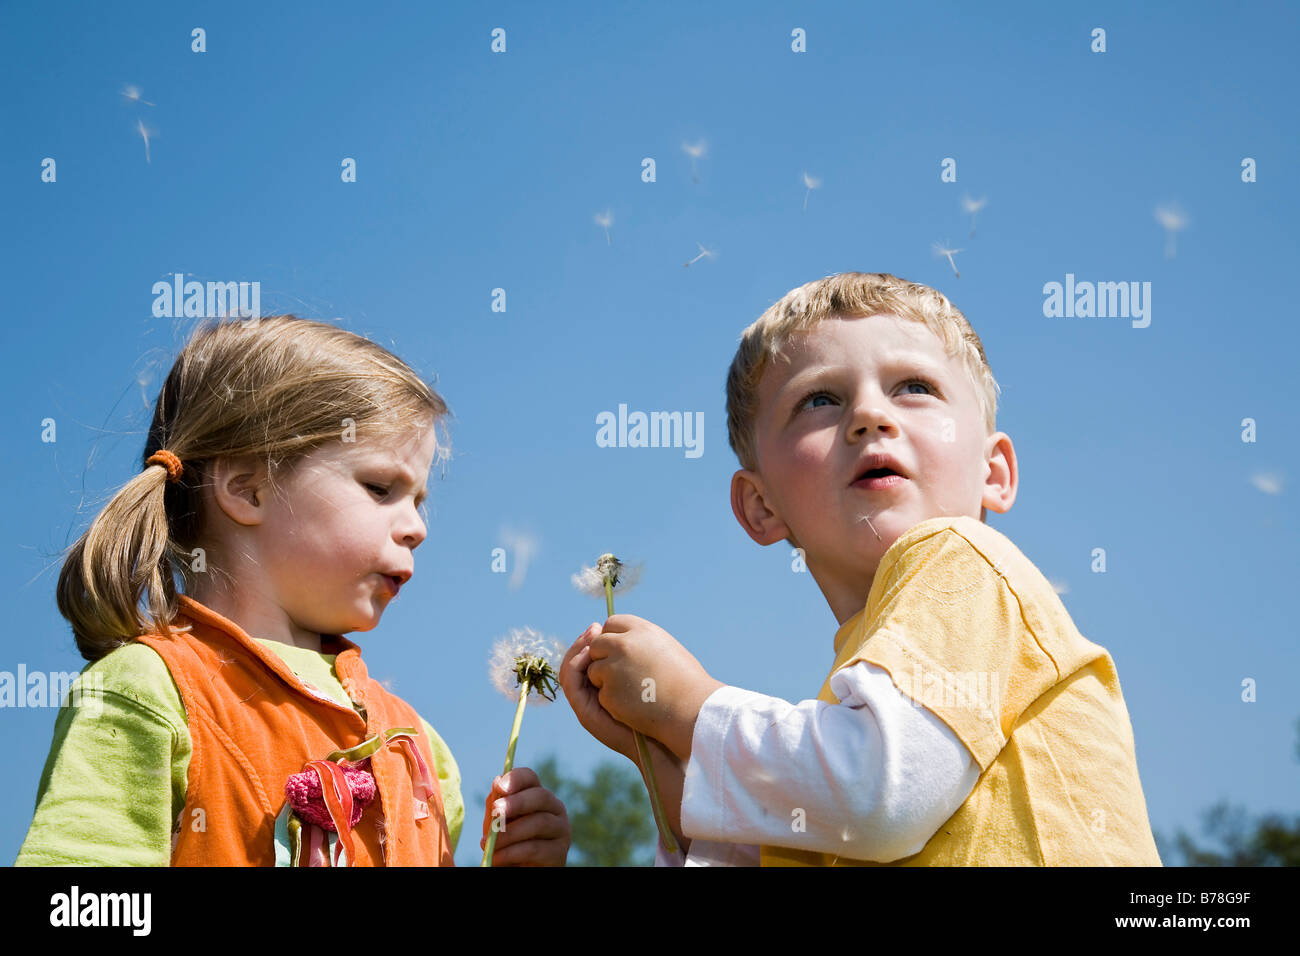 Garçon, 3 ans, et fille, 4 ans, blowballs soufflage, graines de pissenlit (Taraxacum officinale), Suisse, Europe Banque D'Images